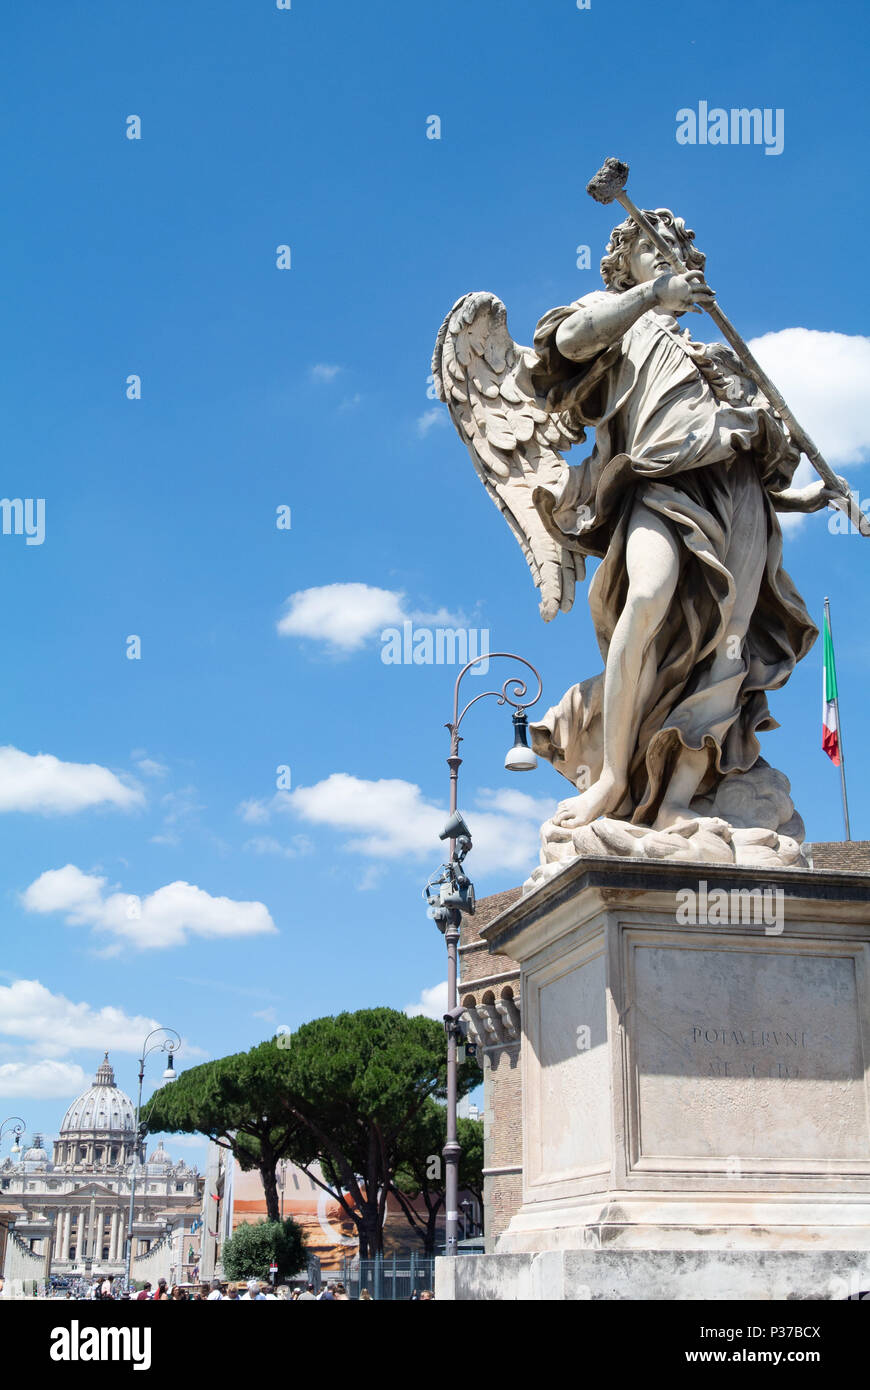 Statue on ponte sant angelo bridge, Rome, lazio, Italy Stock Photo